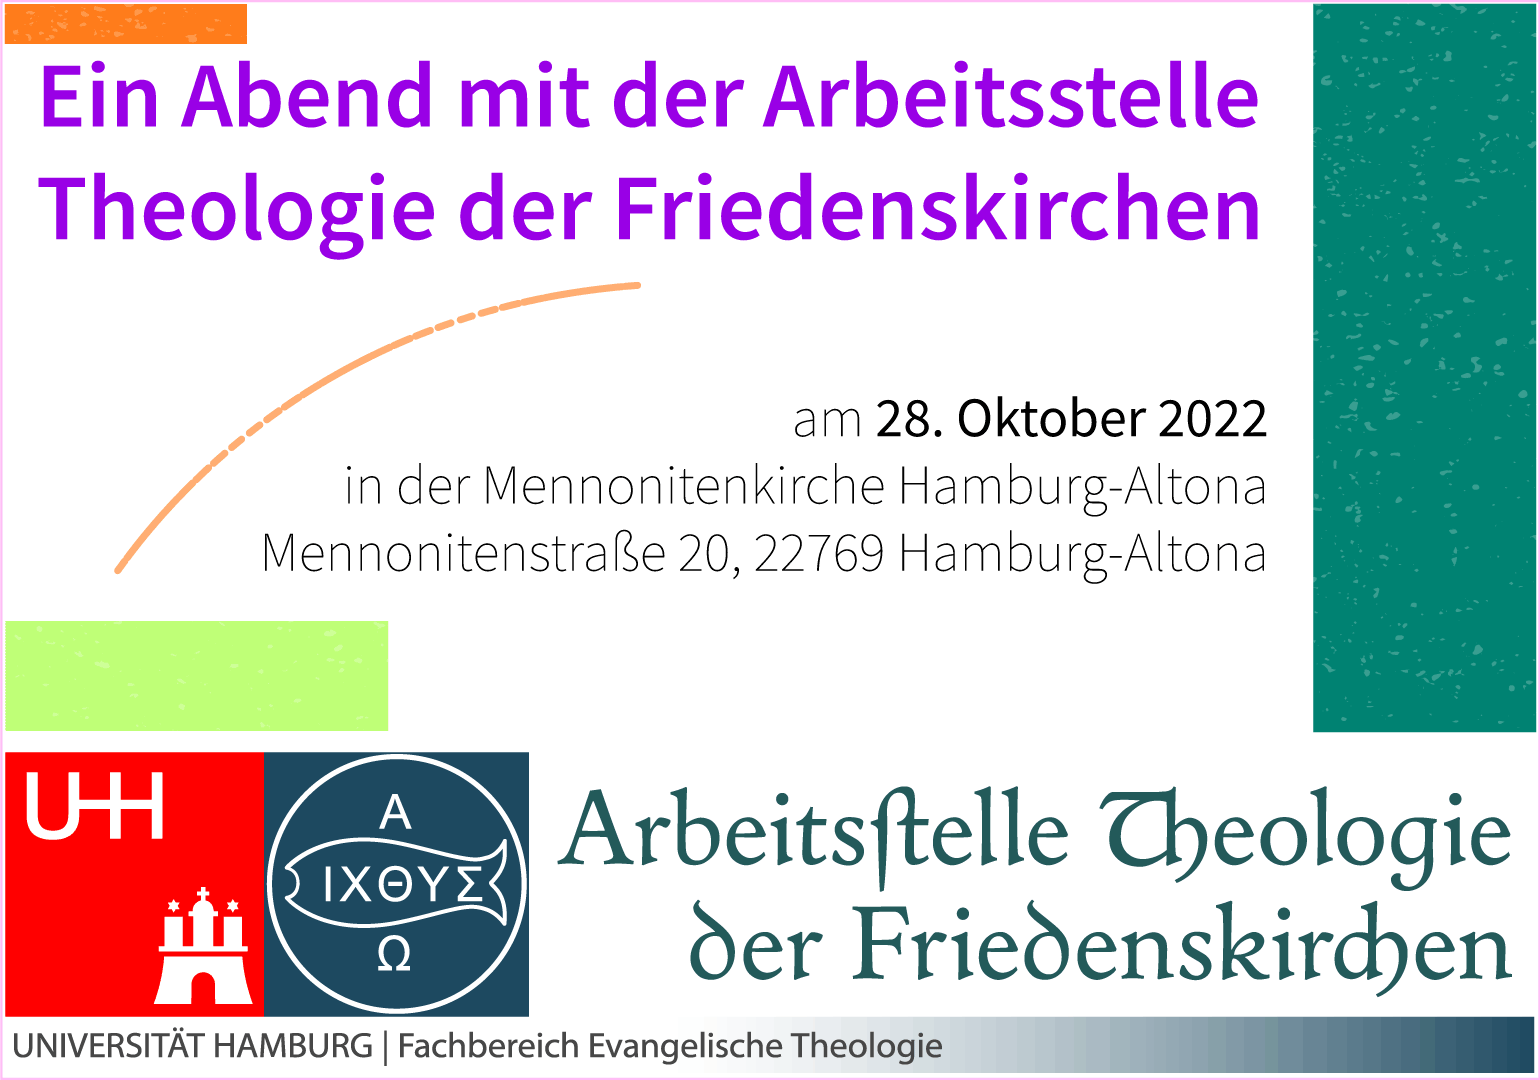 Arbeitsstelle Theologie der Friedenskirchen, Uni Hamburg, Abend.